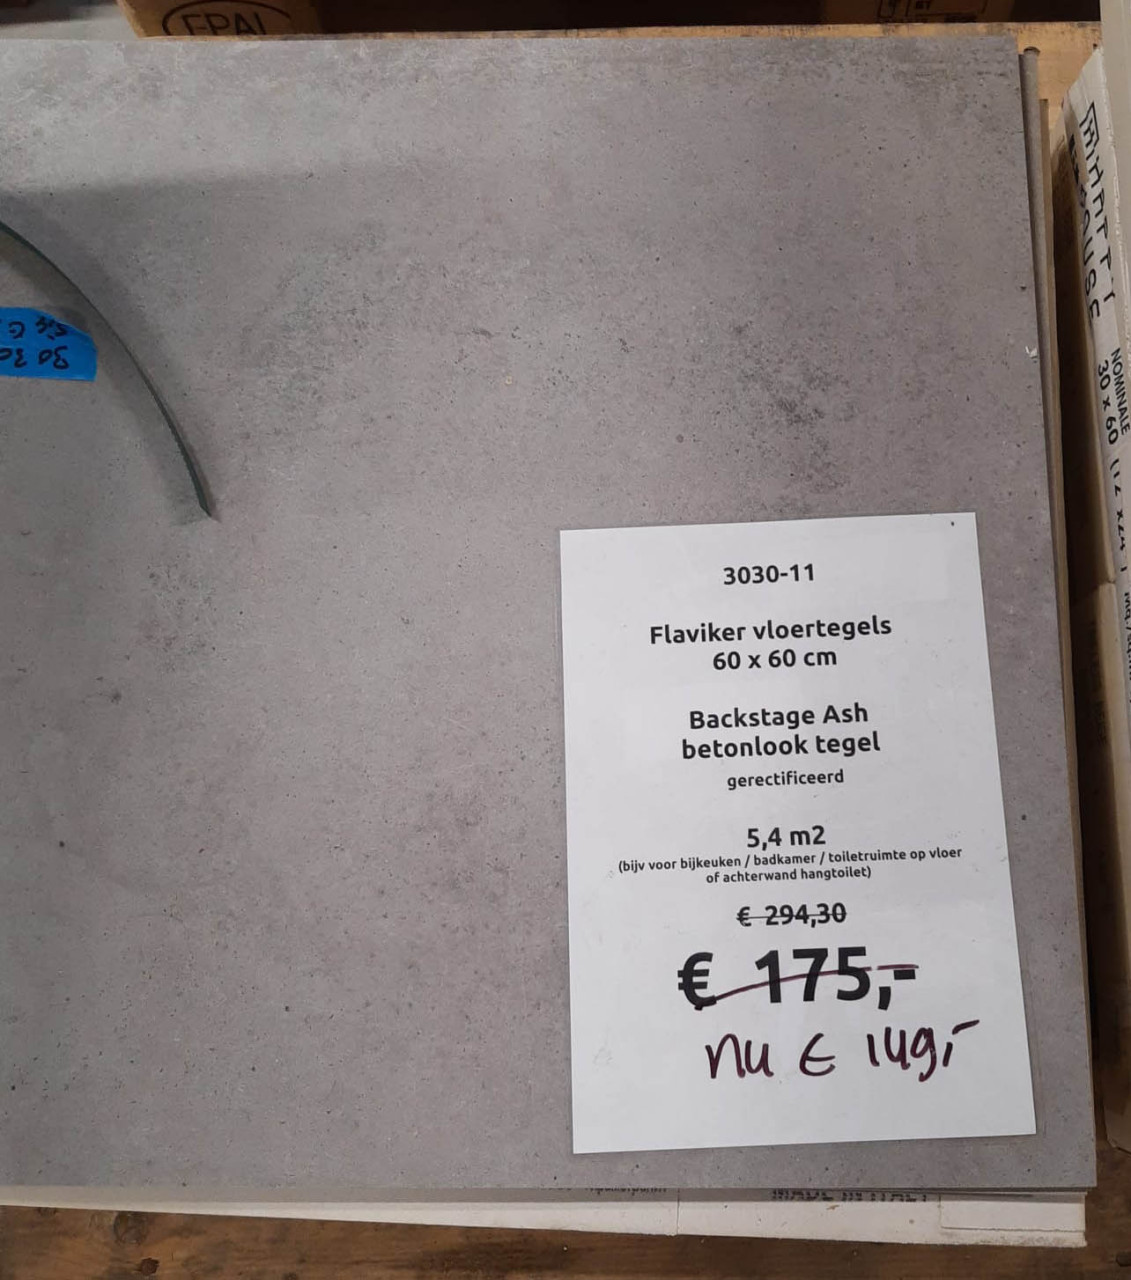 5,4 m2 betonlook vloertegels 60x60, grijs, van € 294,30 voor